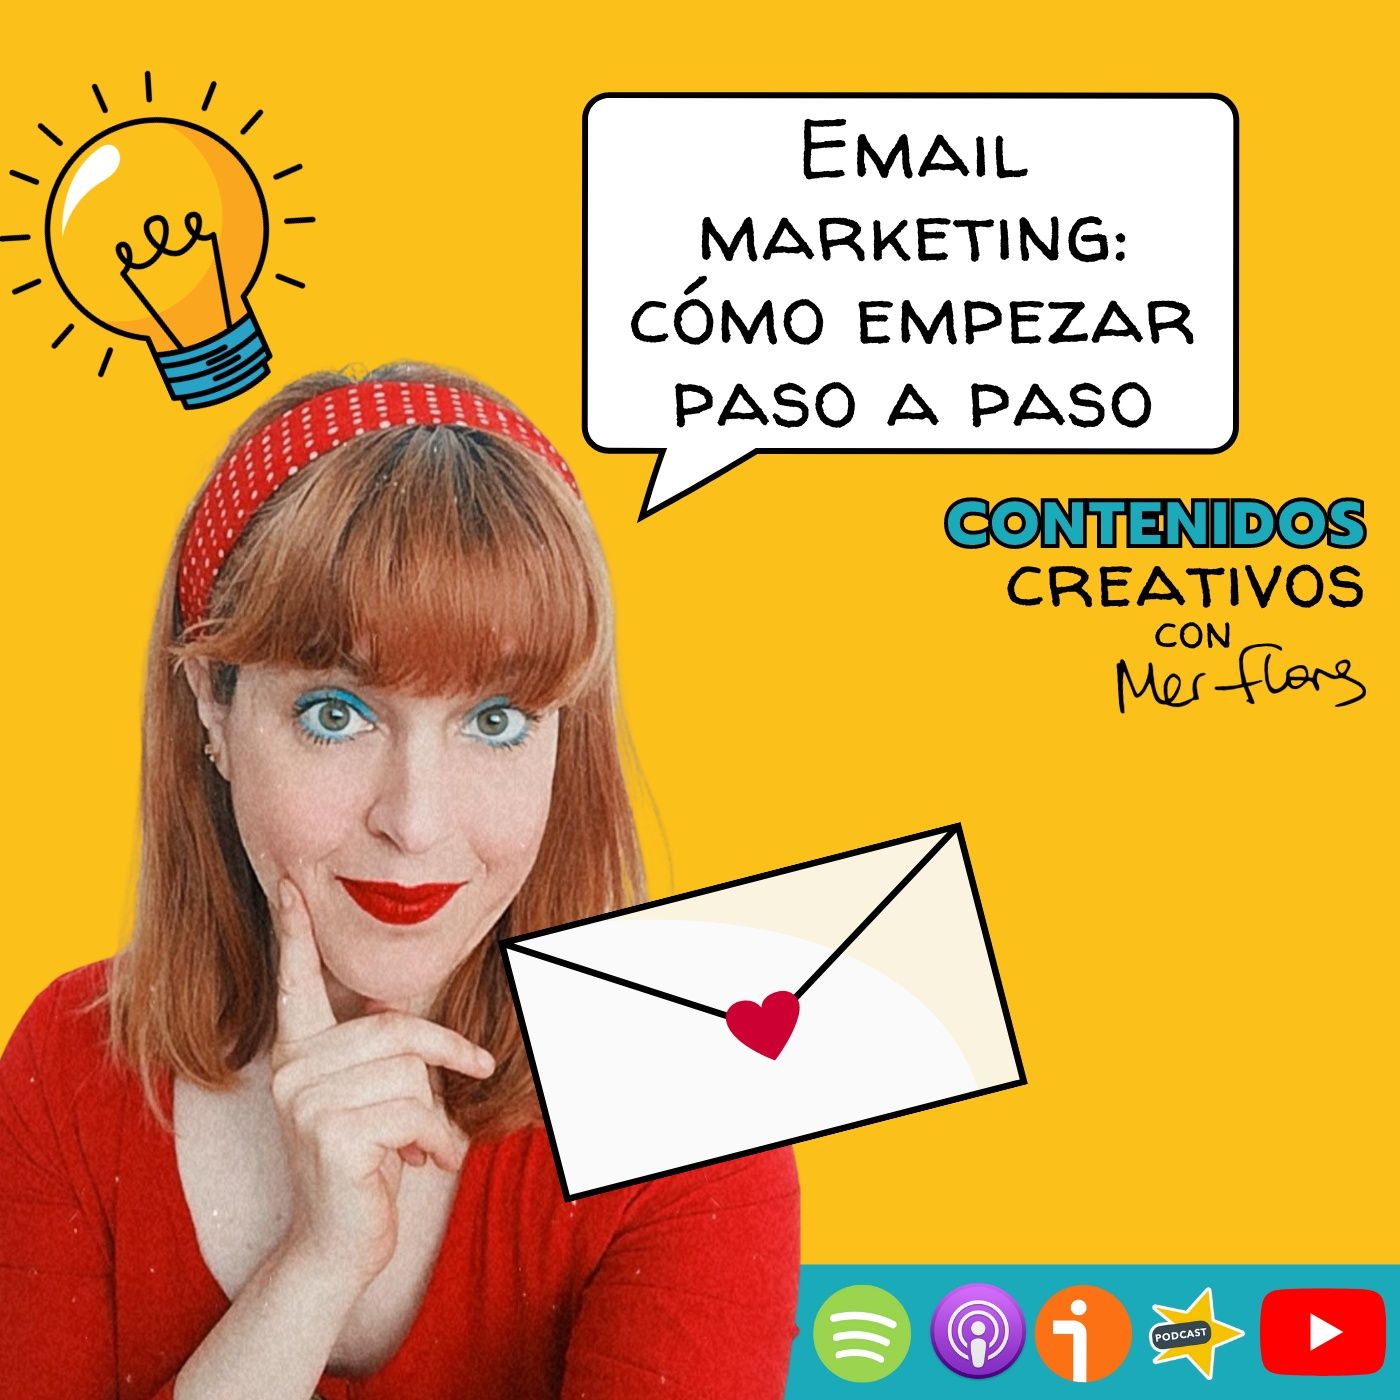 20. Email marketing: cómo empezar